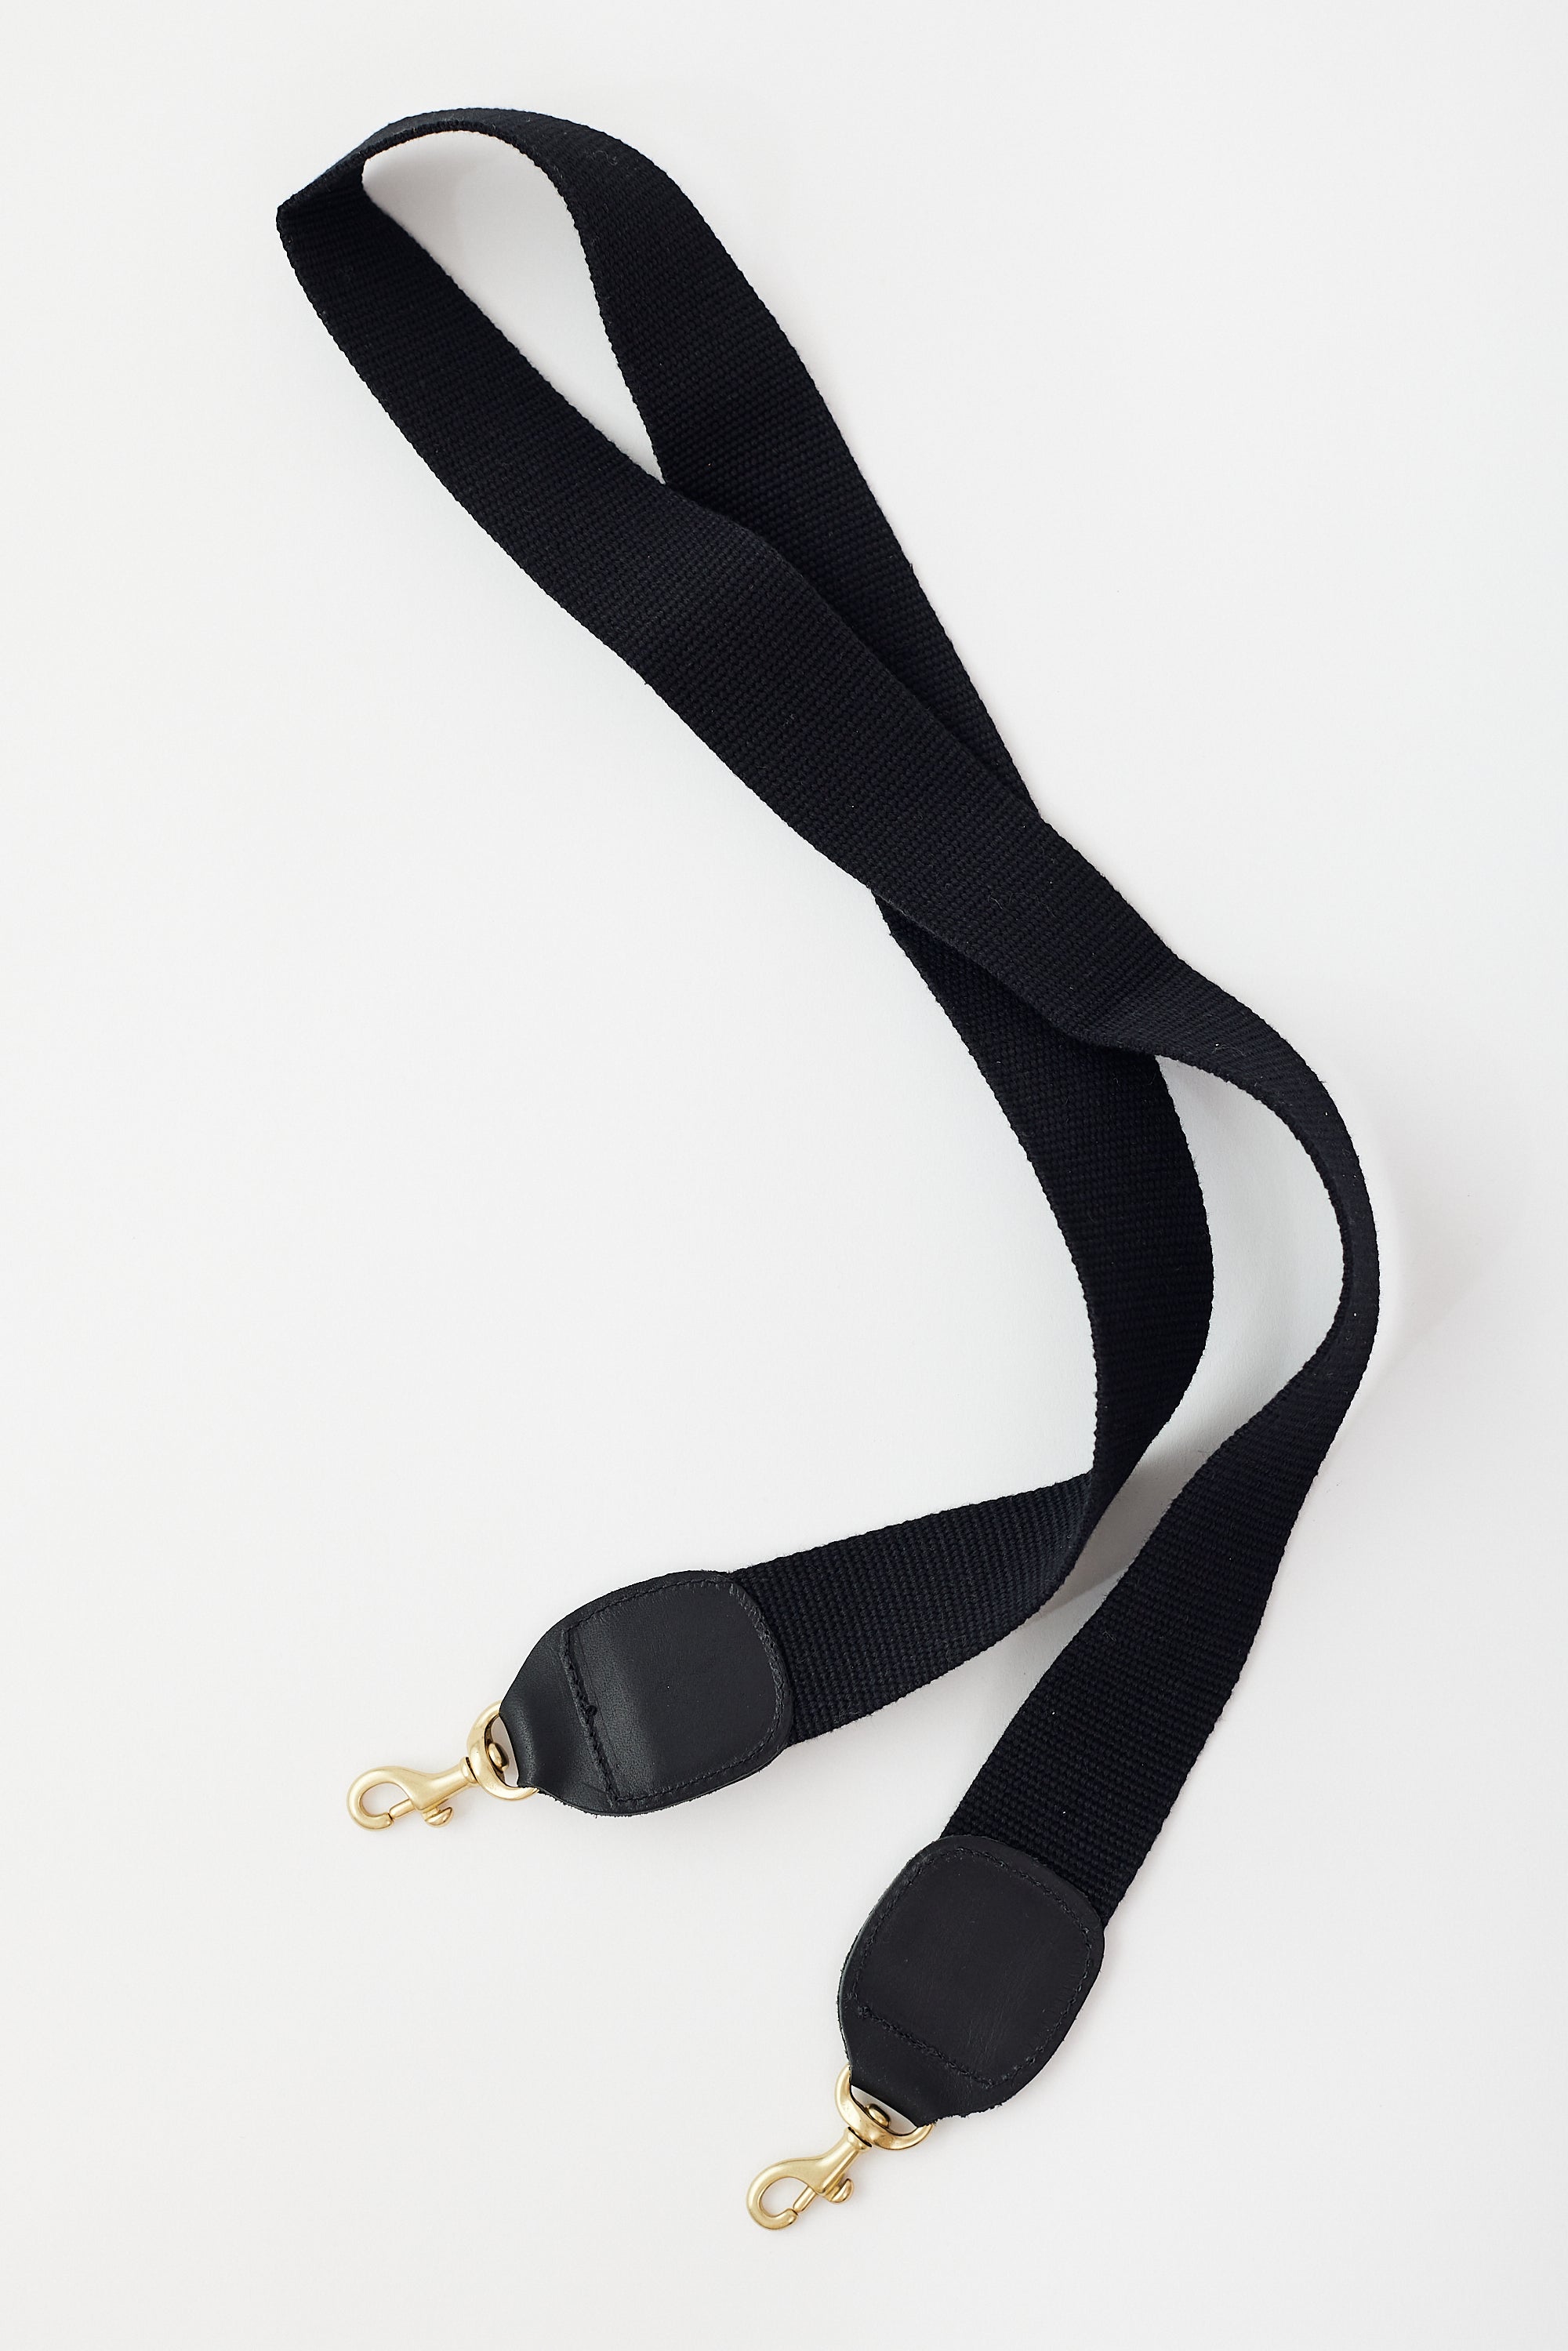 Clare V. - Shoulder Strap in Black & White Cotton Webbing